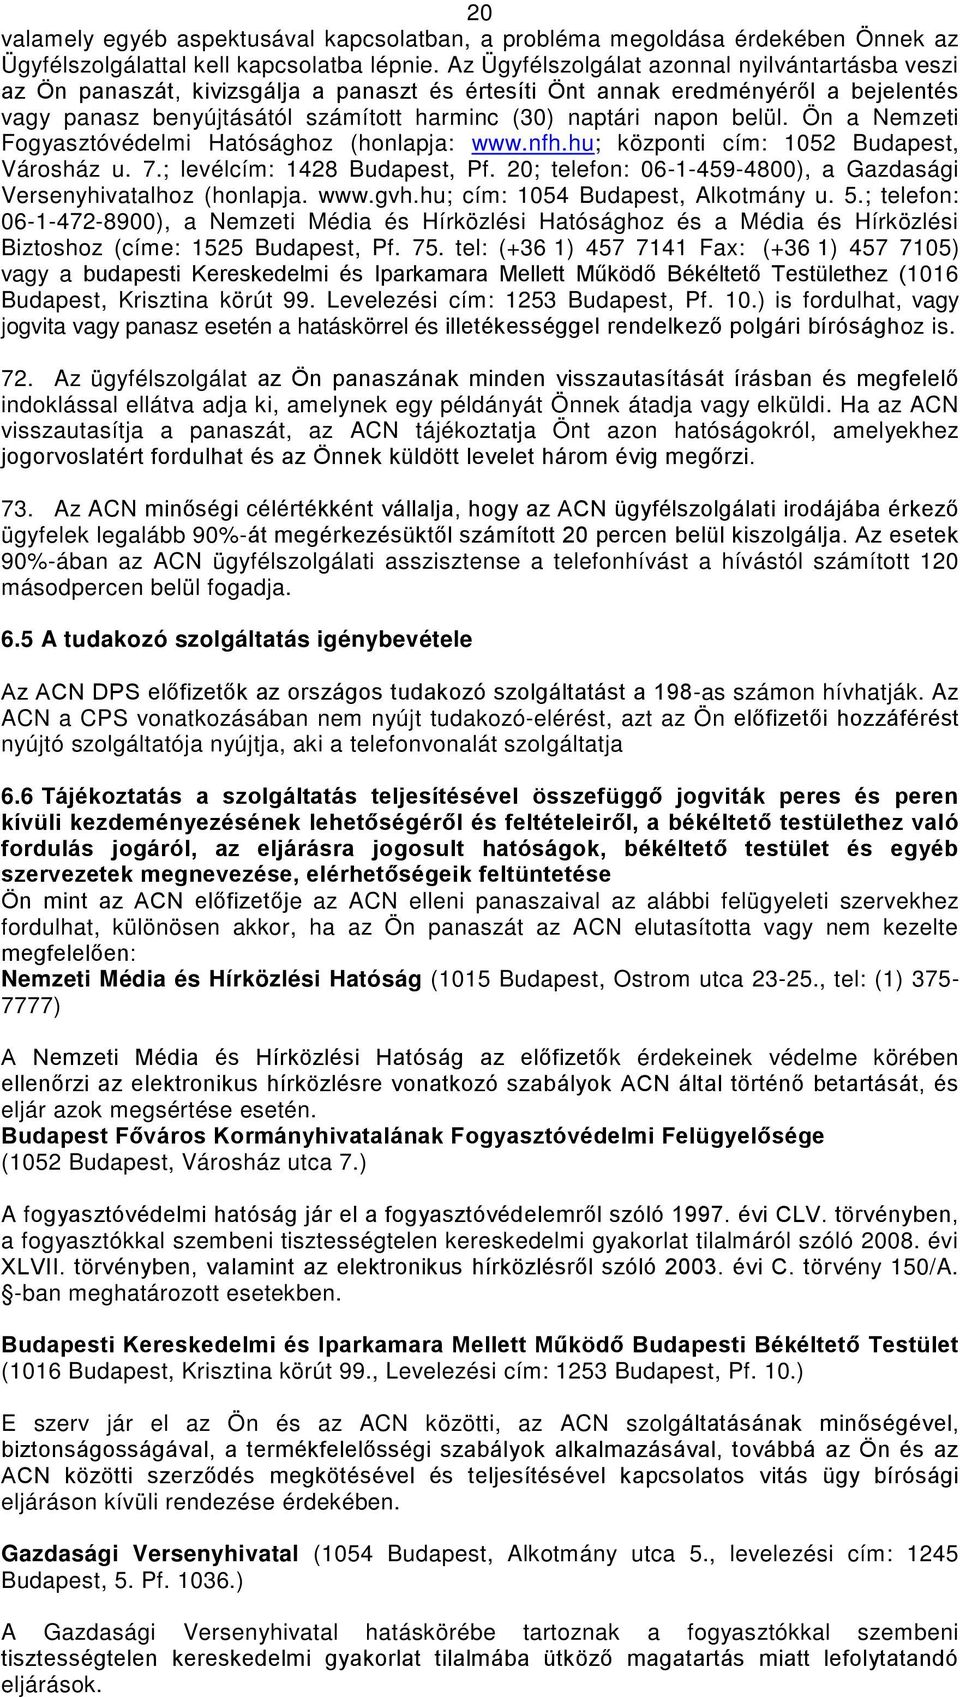 belül. Ön a Nemzeti Fogyasztóvédelmi Hatósághoz (honlapja: www.nfh.hu; központi cím: 1052 Budapest, Városház u. 7.; levélcím: 1428 Budapest, Pf.